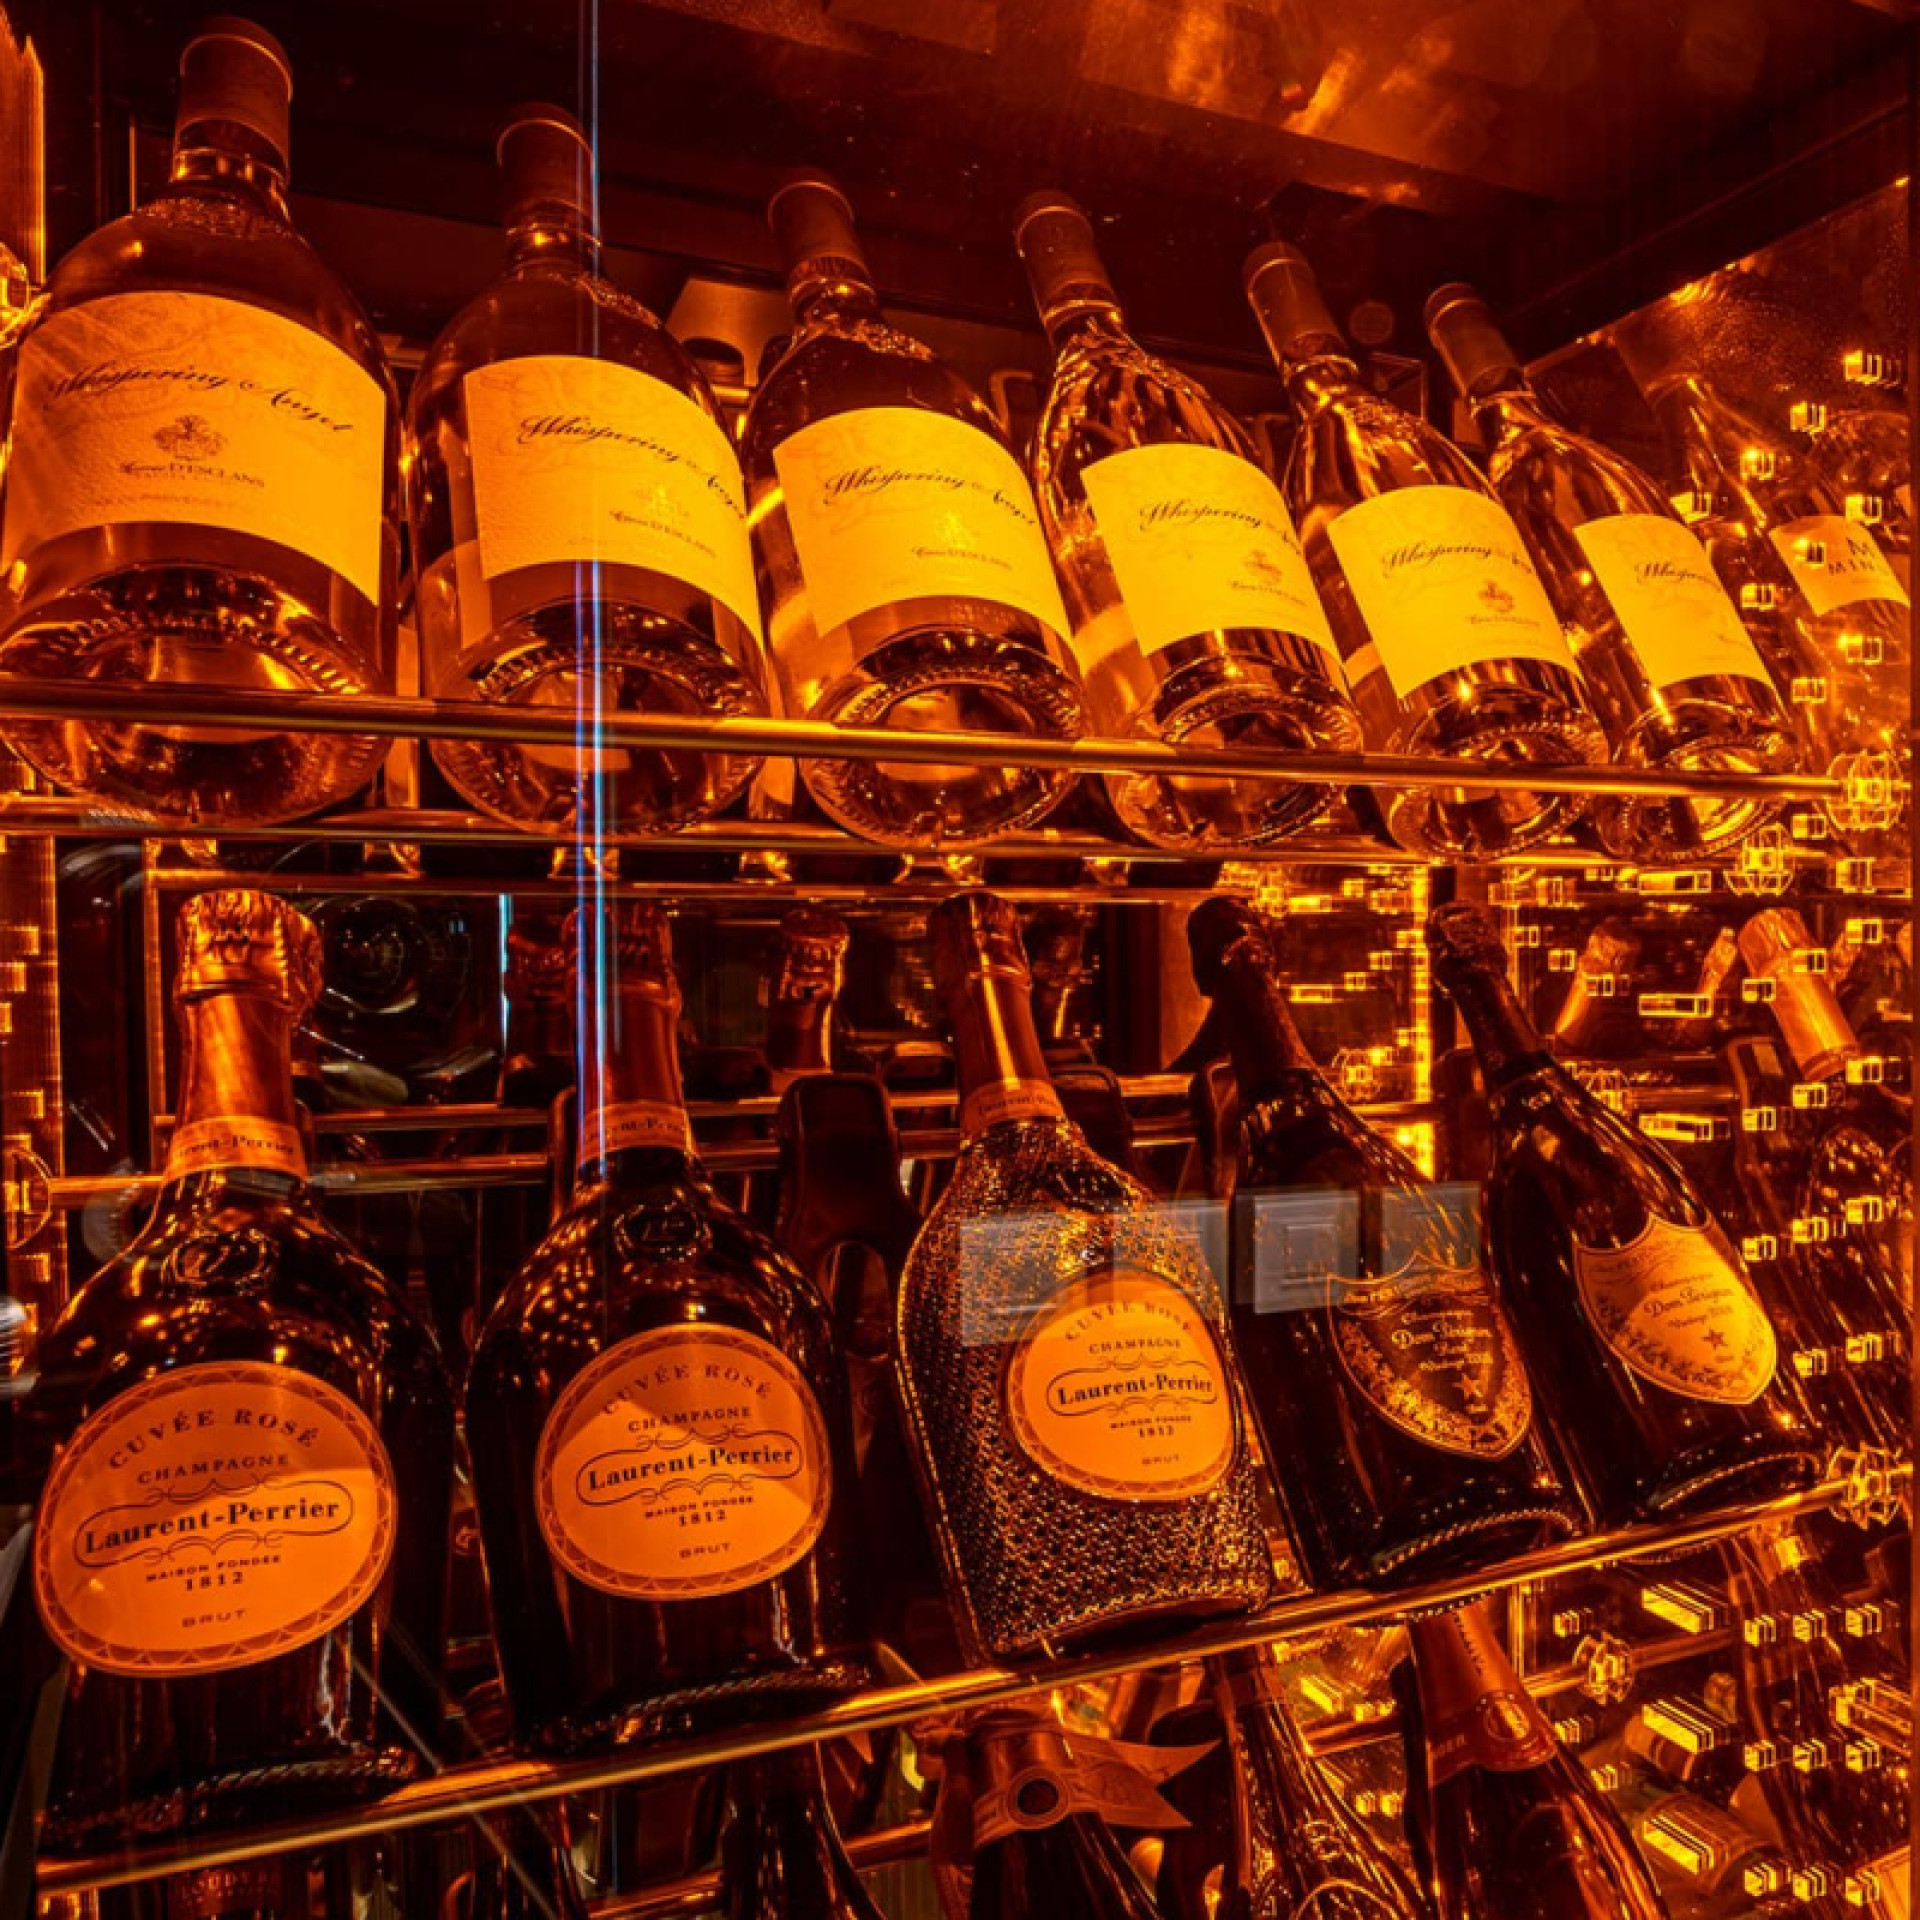 Integrierte Beleuchtung im Weinkühlschrank, gekühlte Glasvitrine oder Weinraumaufteilung. Szenografie und Ausstellungsbar, um die Flaschen hervorzuheben und Ihr Weinangebot zu bewerben.